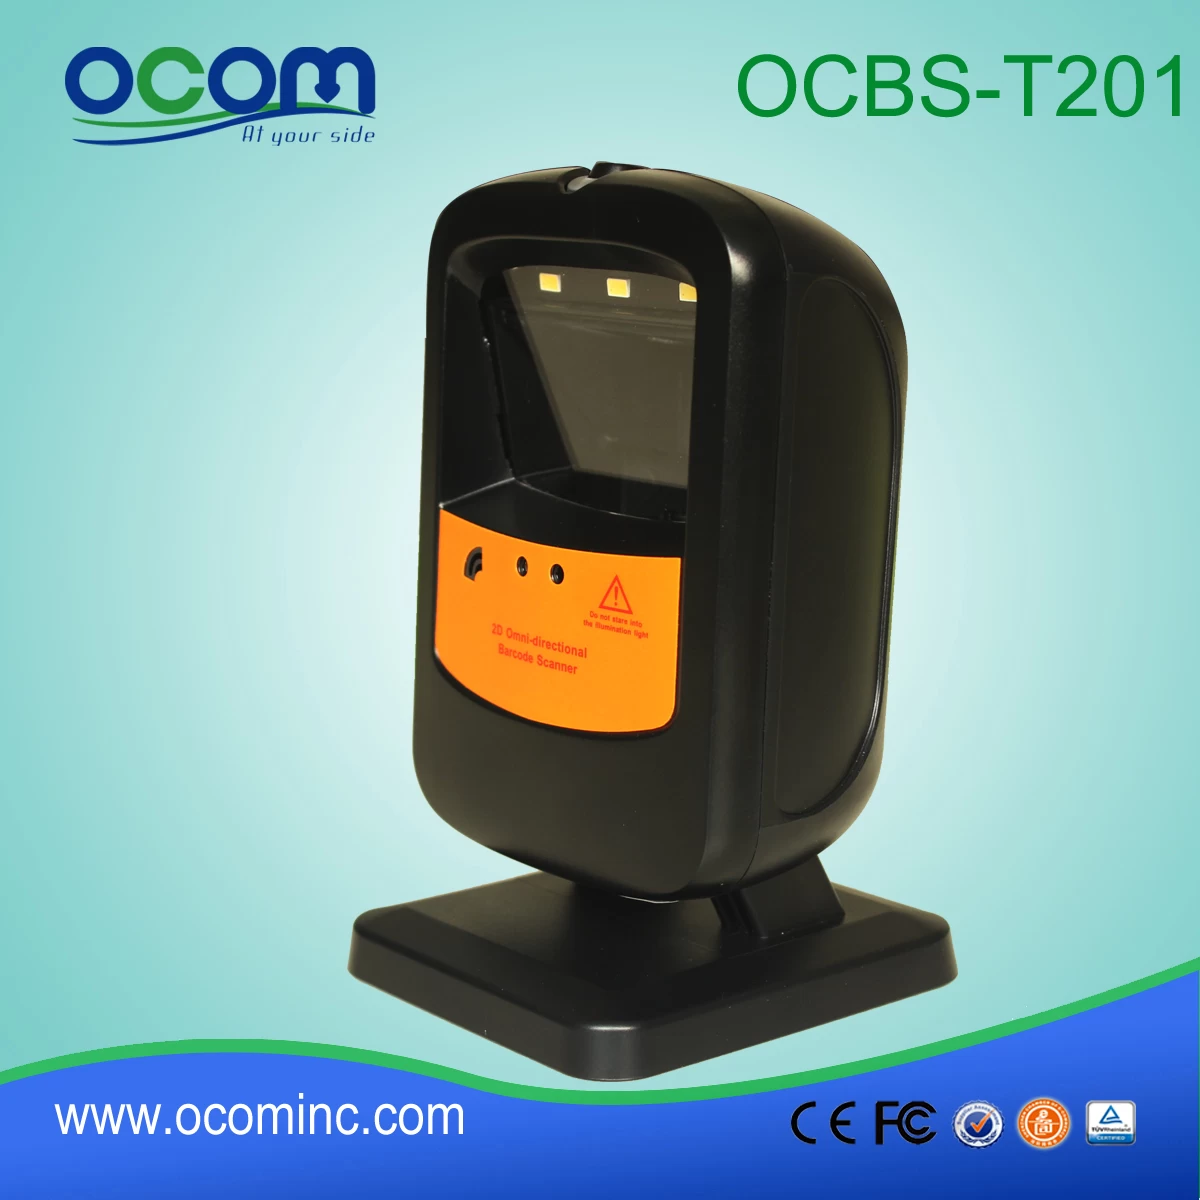 OCBS-T201:2d barcode reader module, handfree barcode reader